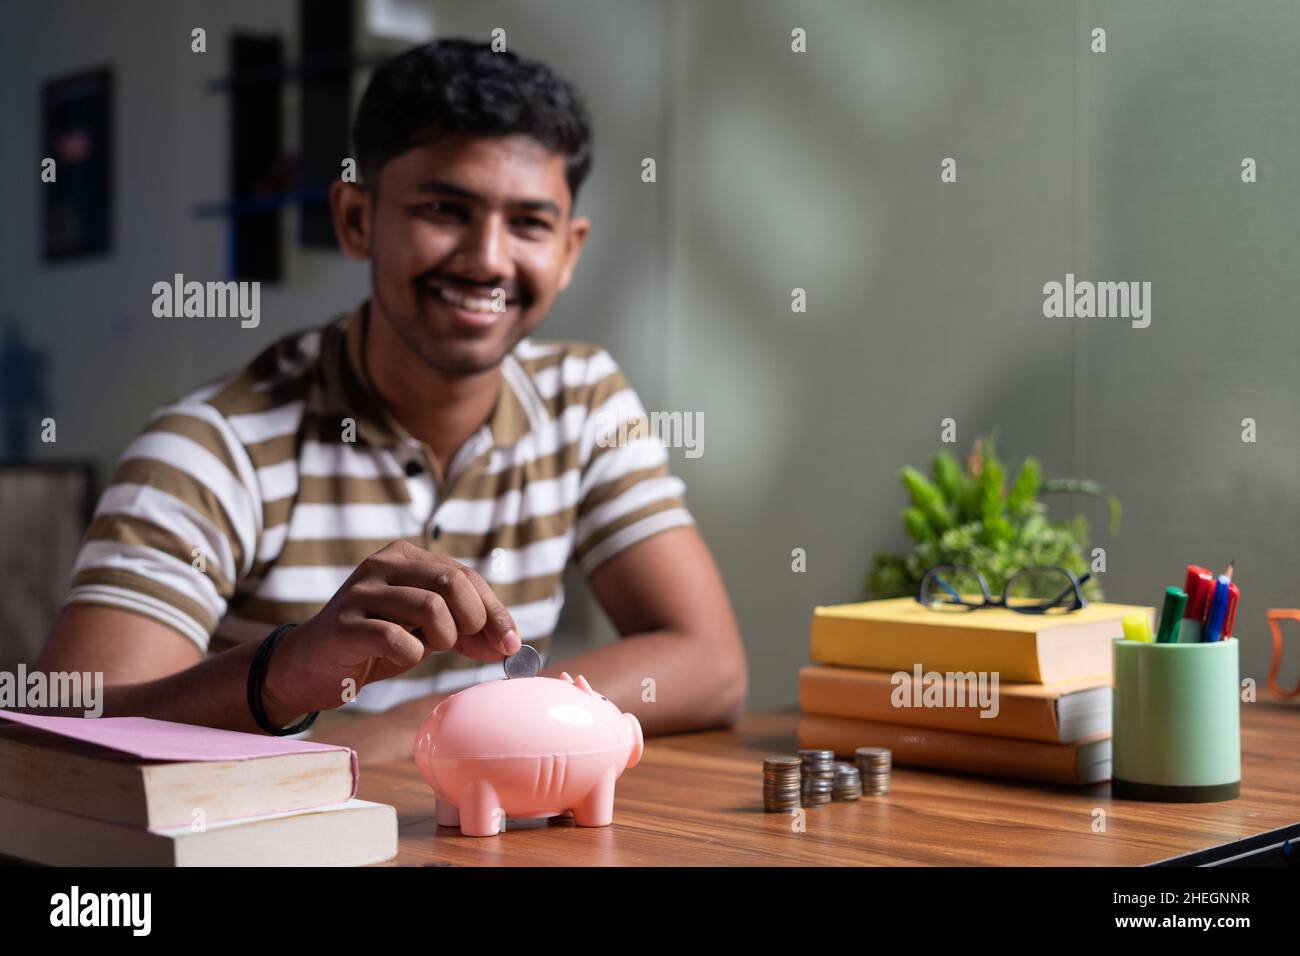 Concentrez-vous sur la banque d'argent de piggy jeunes étudiants indiens économiser de l'argent pour l'éducation à l'étranger en plaçant de l'argent sur la banque de piggy tout en lisant à la maison - concept Banque D'Images